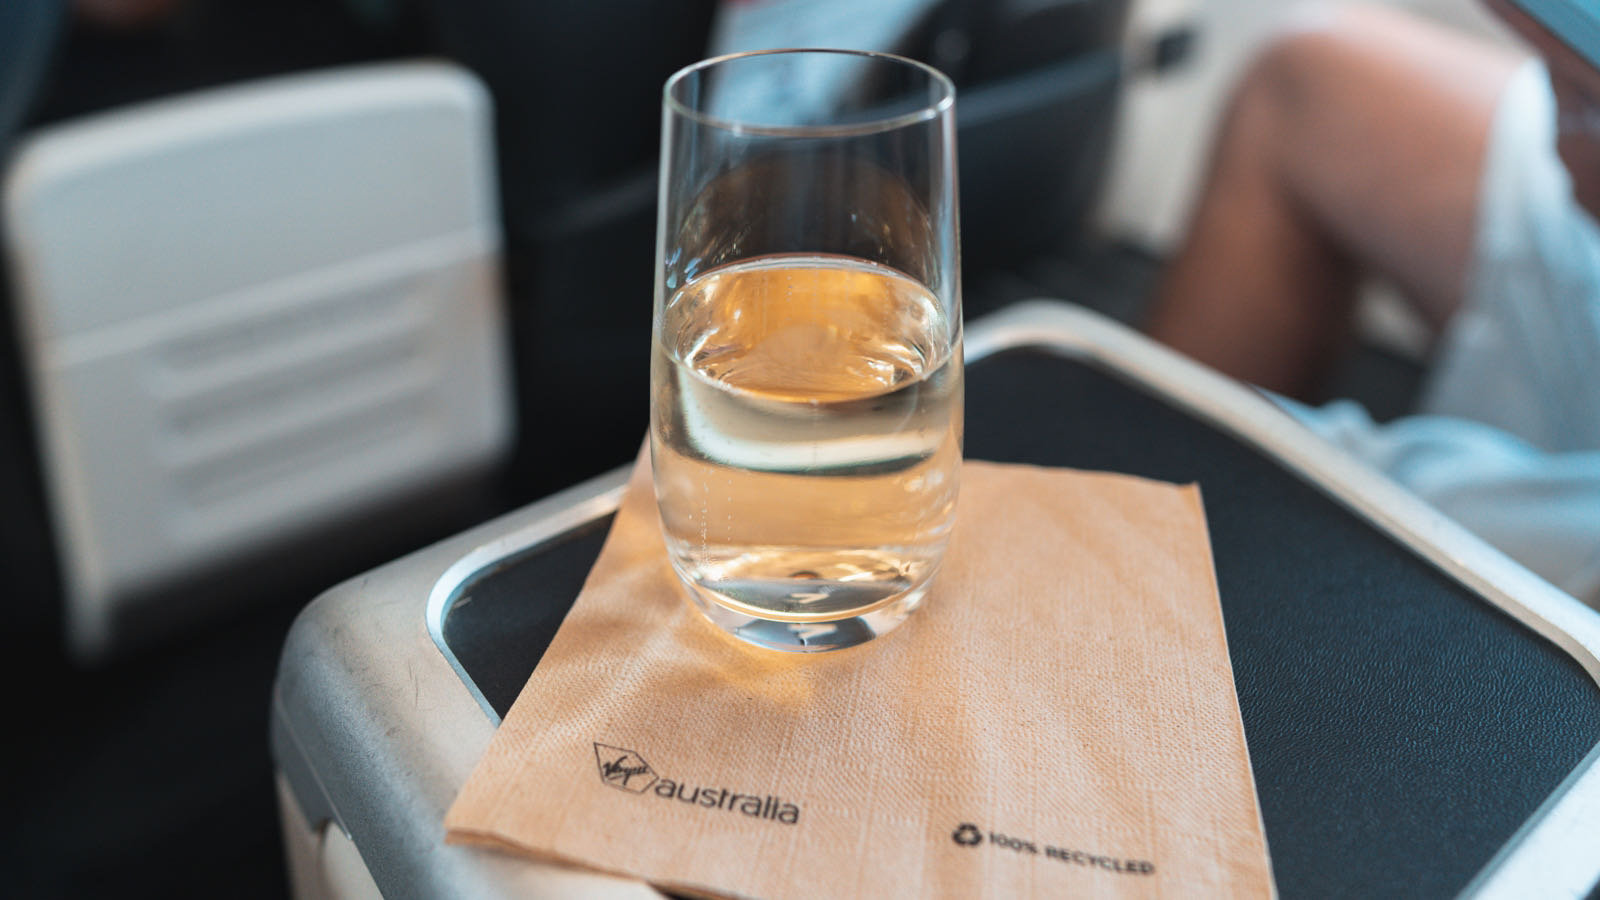 Virgin Australia 737 Business Class drinks